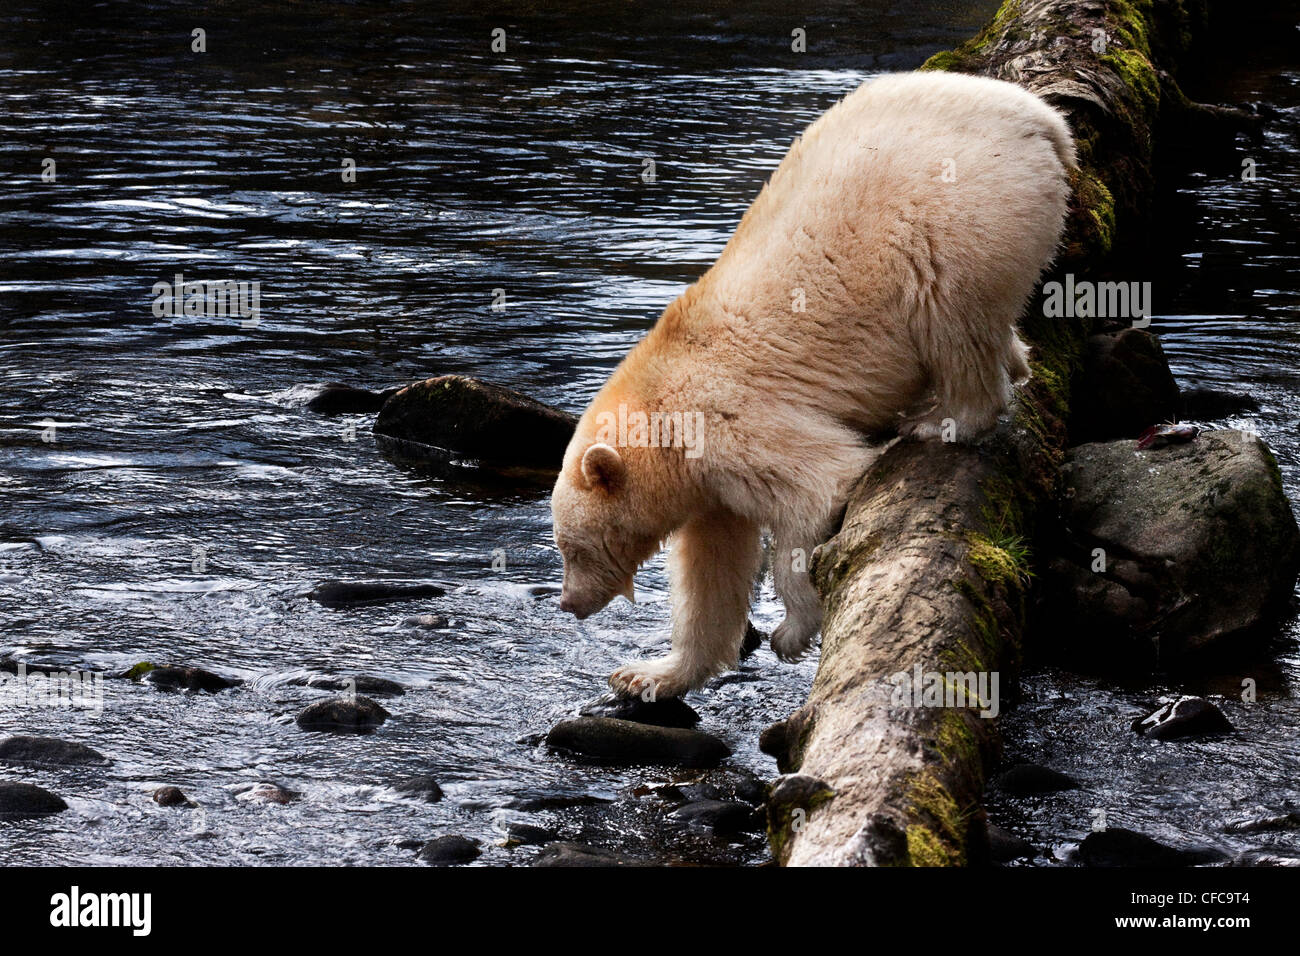 Kermode bear nella grande orso foresta pluviale della Columbia britannica in Canada Foto Stock